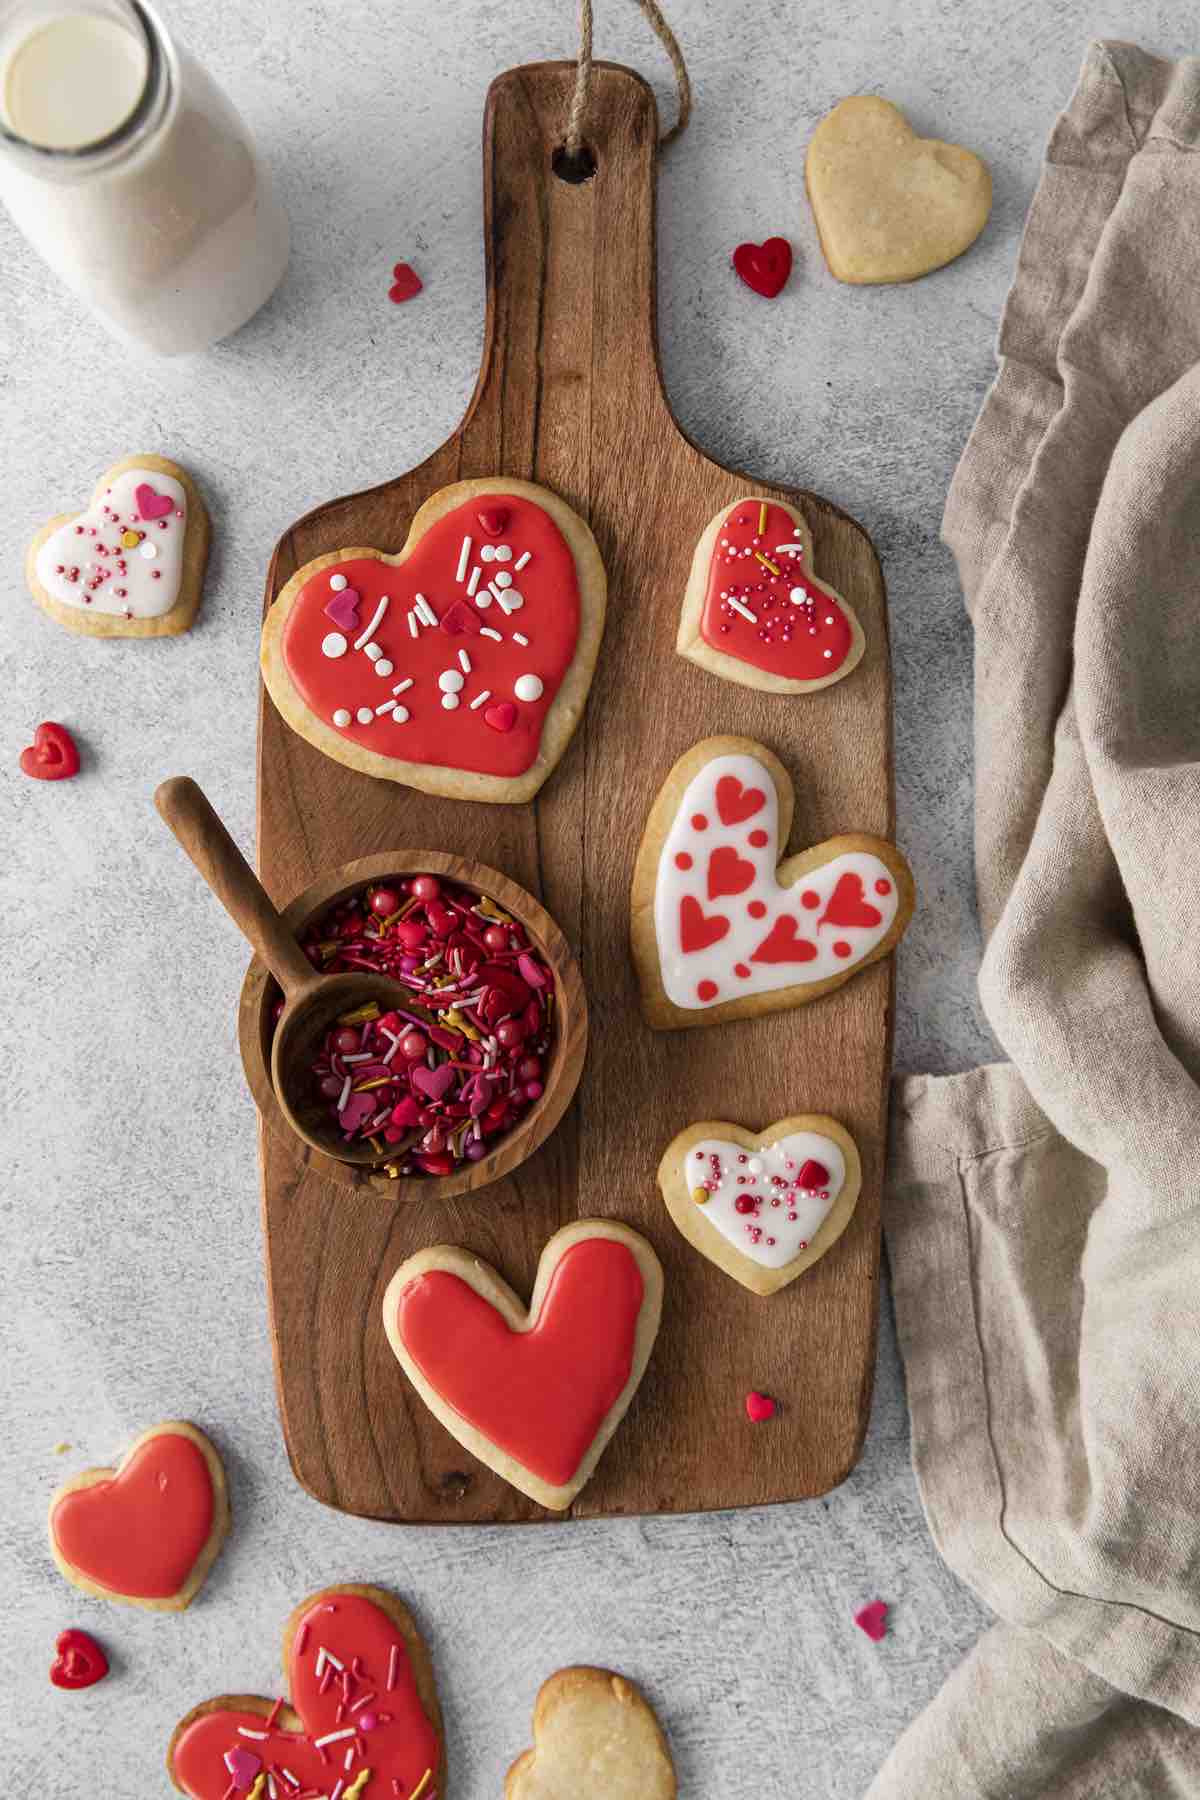 Homemade cookies shaped like hearts.